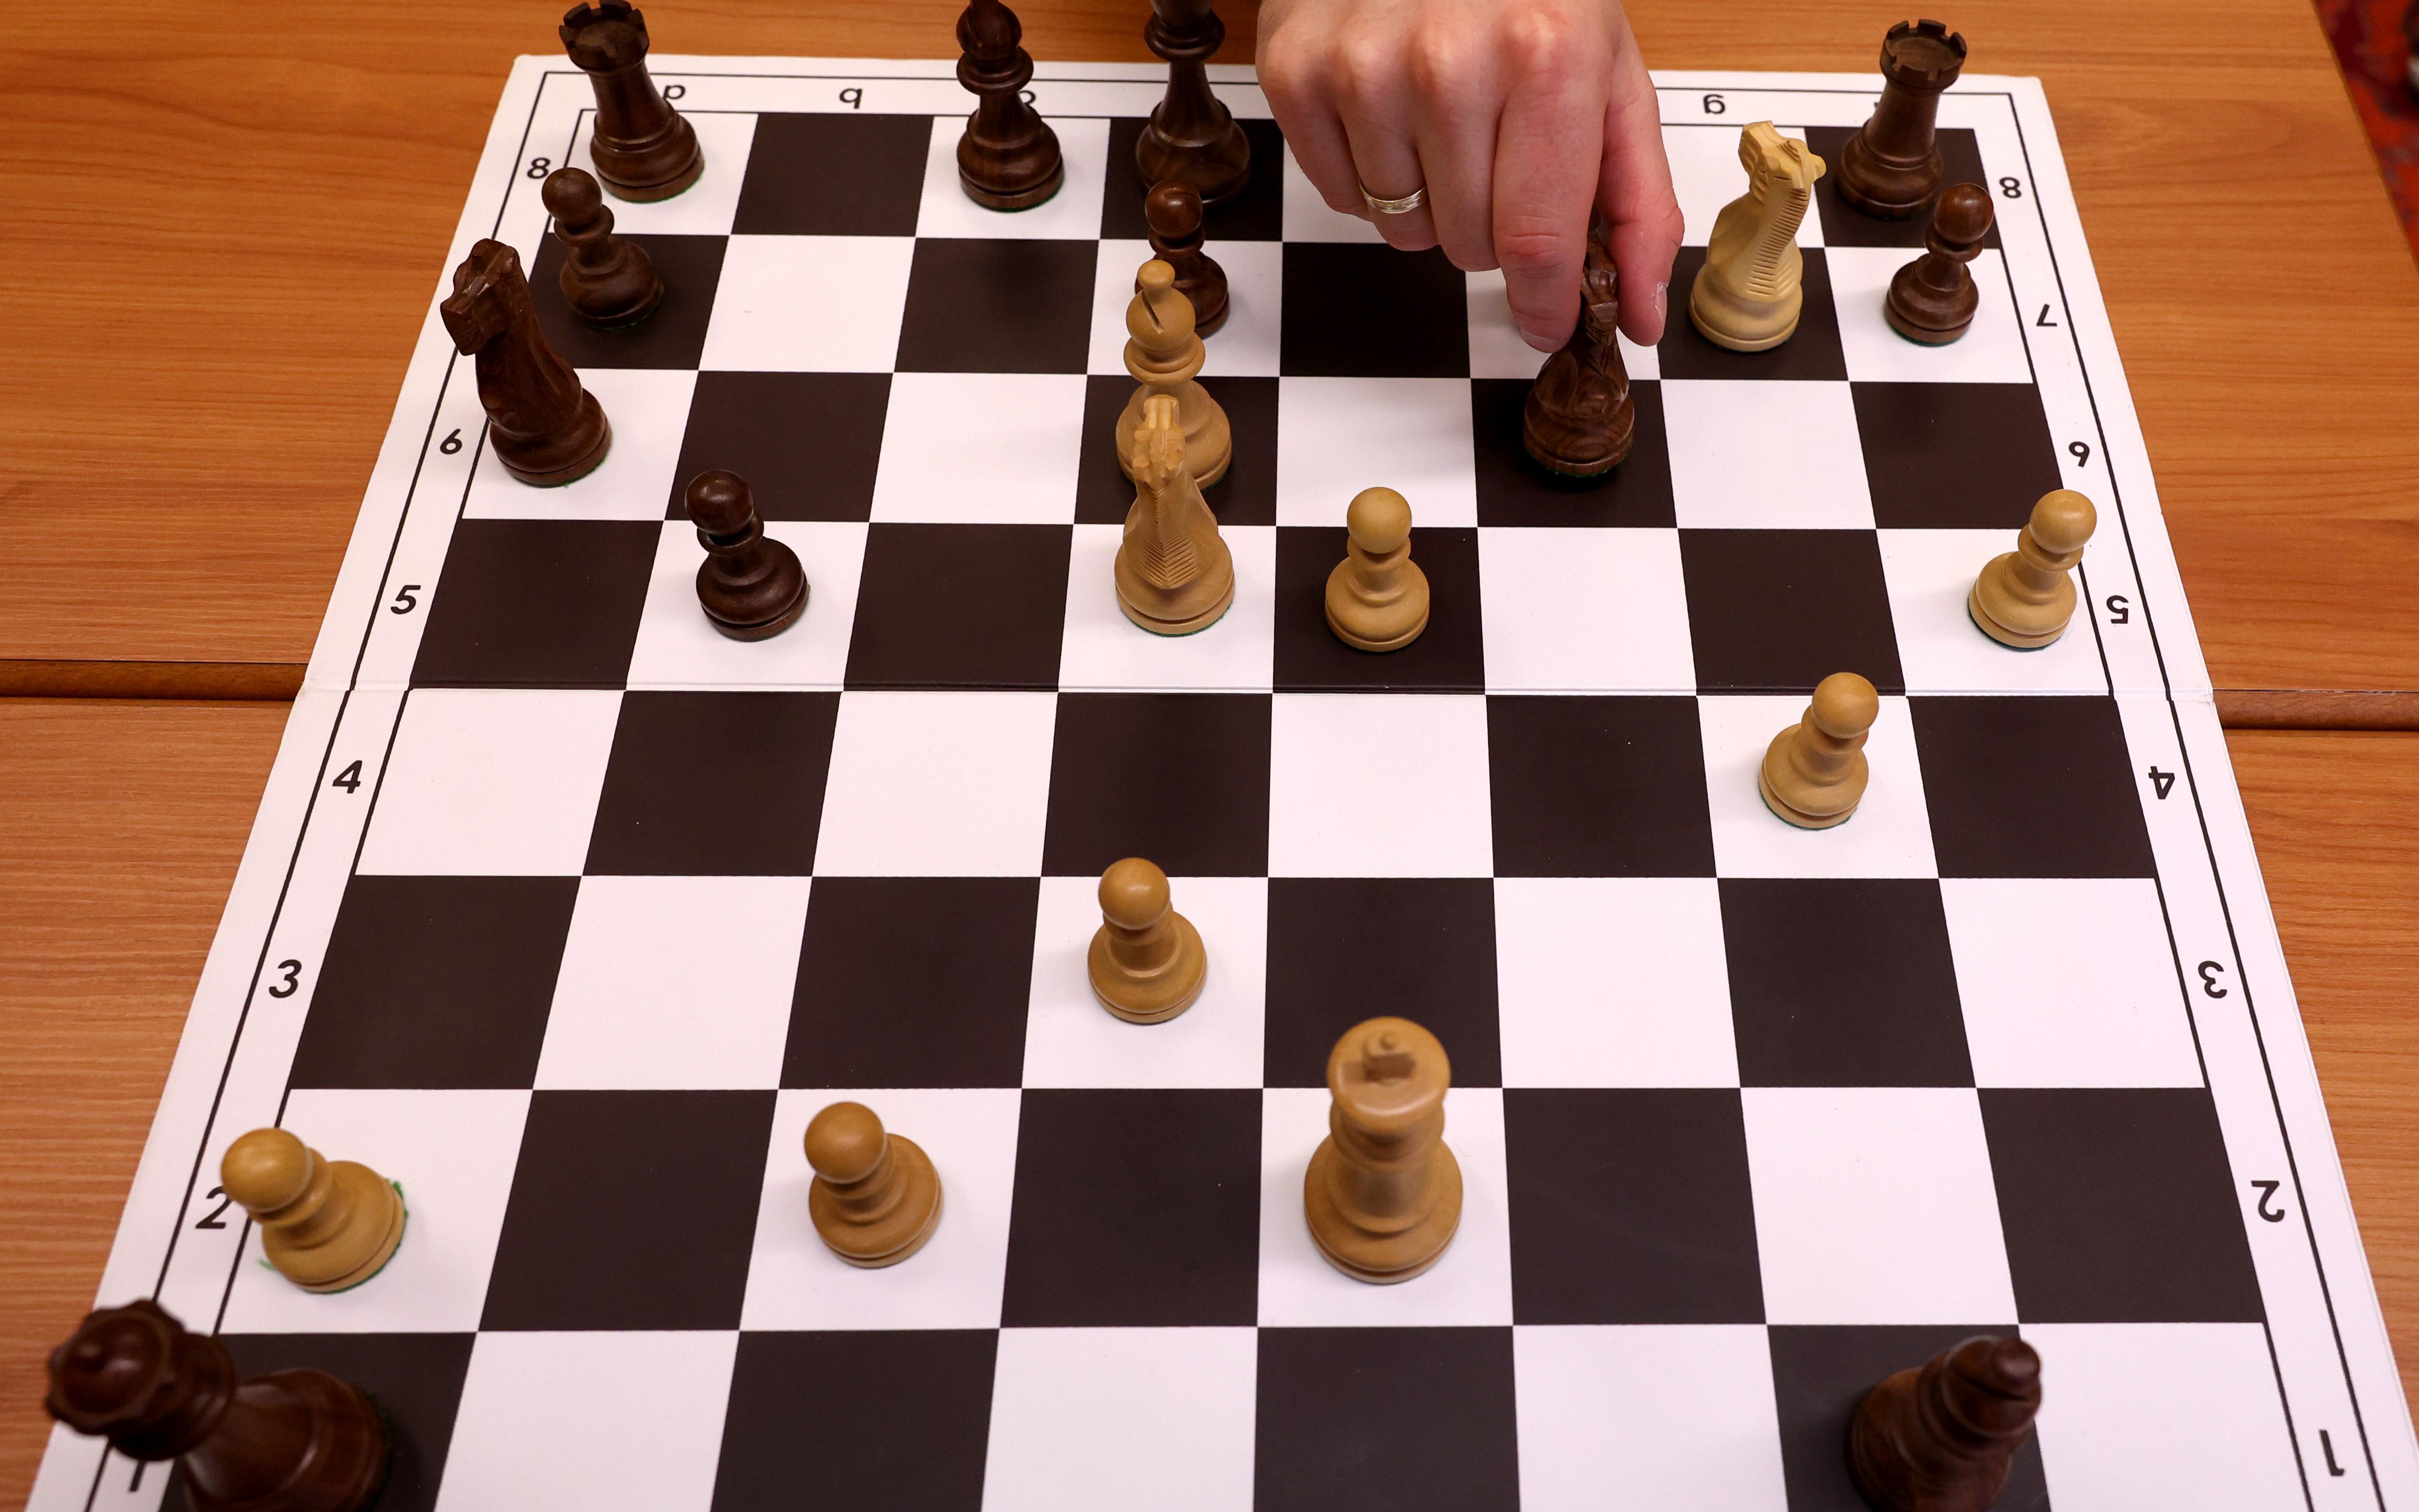 Портал Chess допустил читерство шахматиста из США в более чем 100 партиях